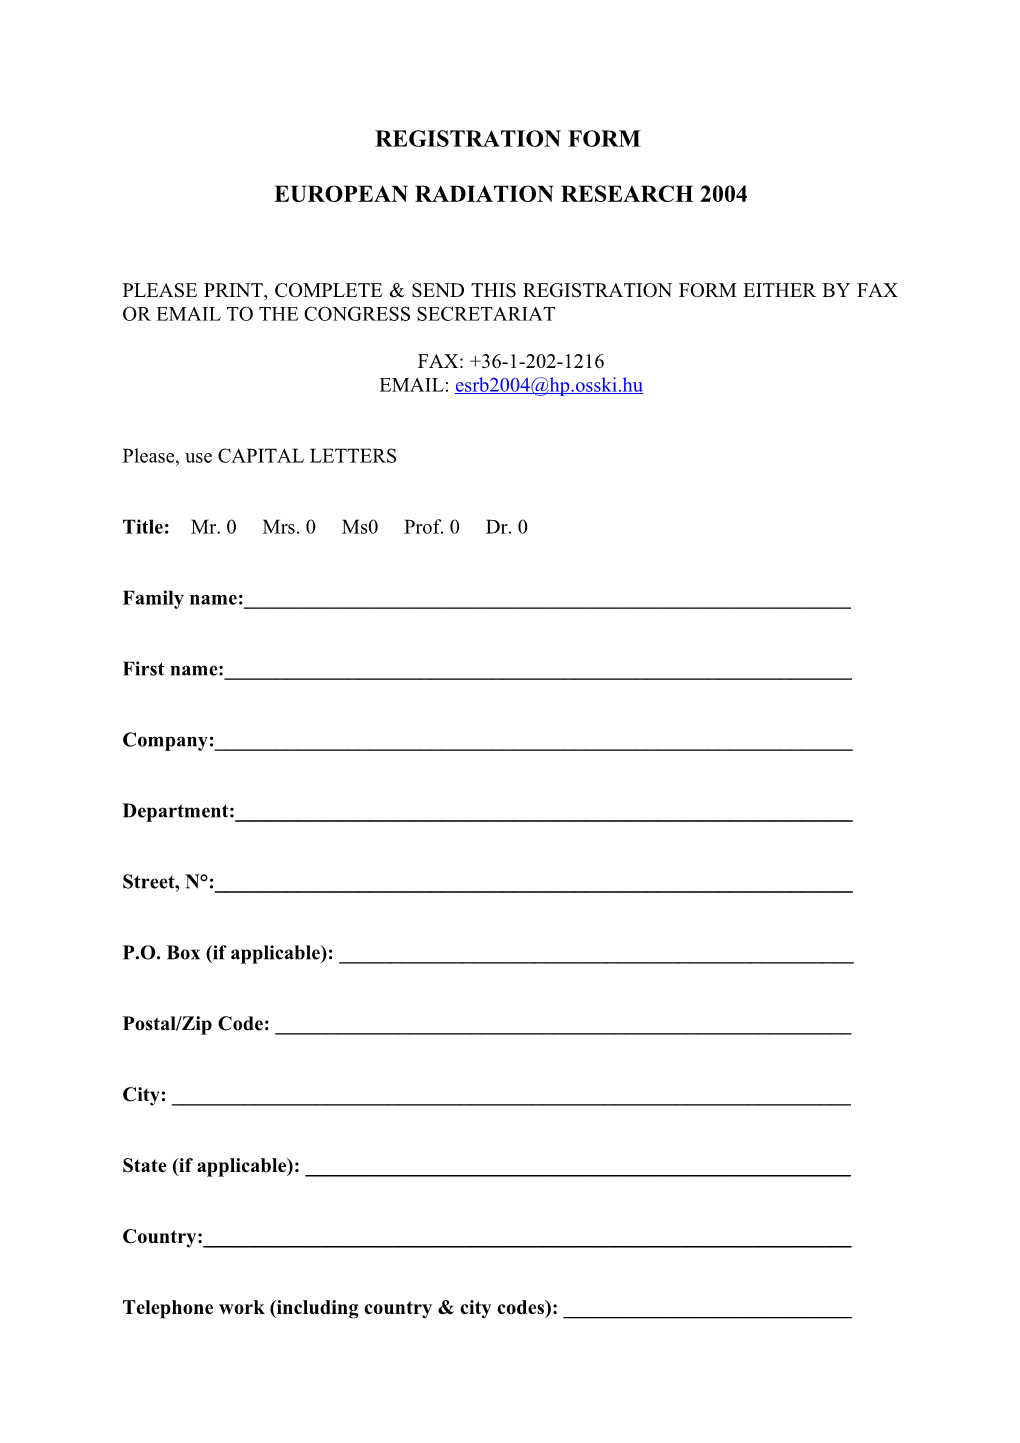 Registration Form s26